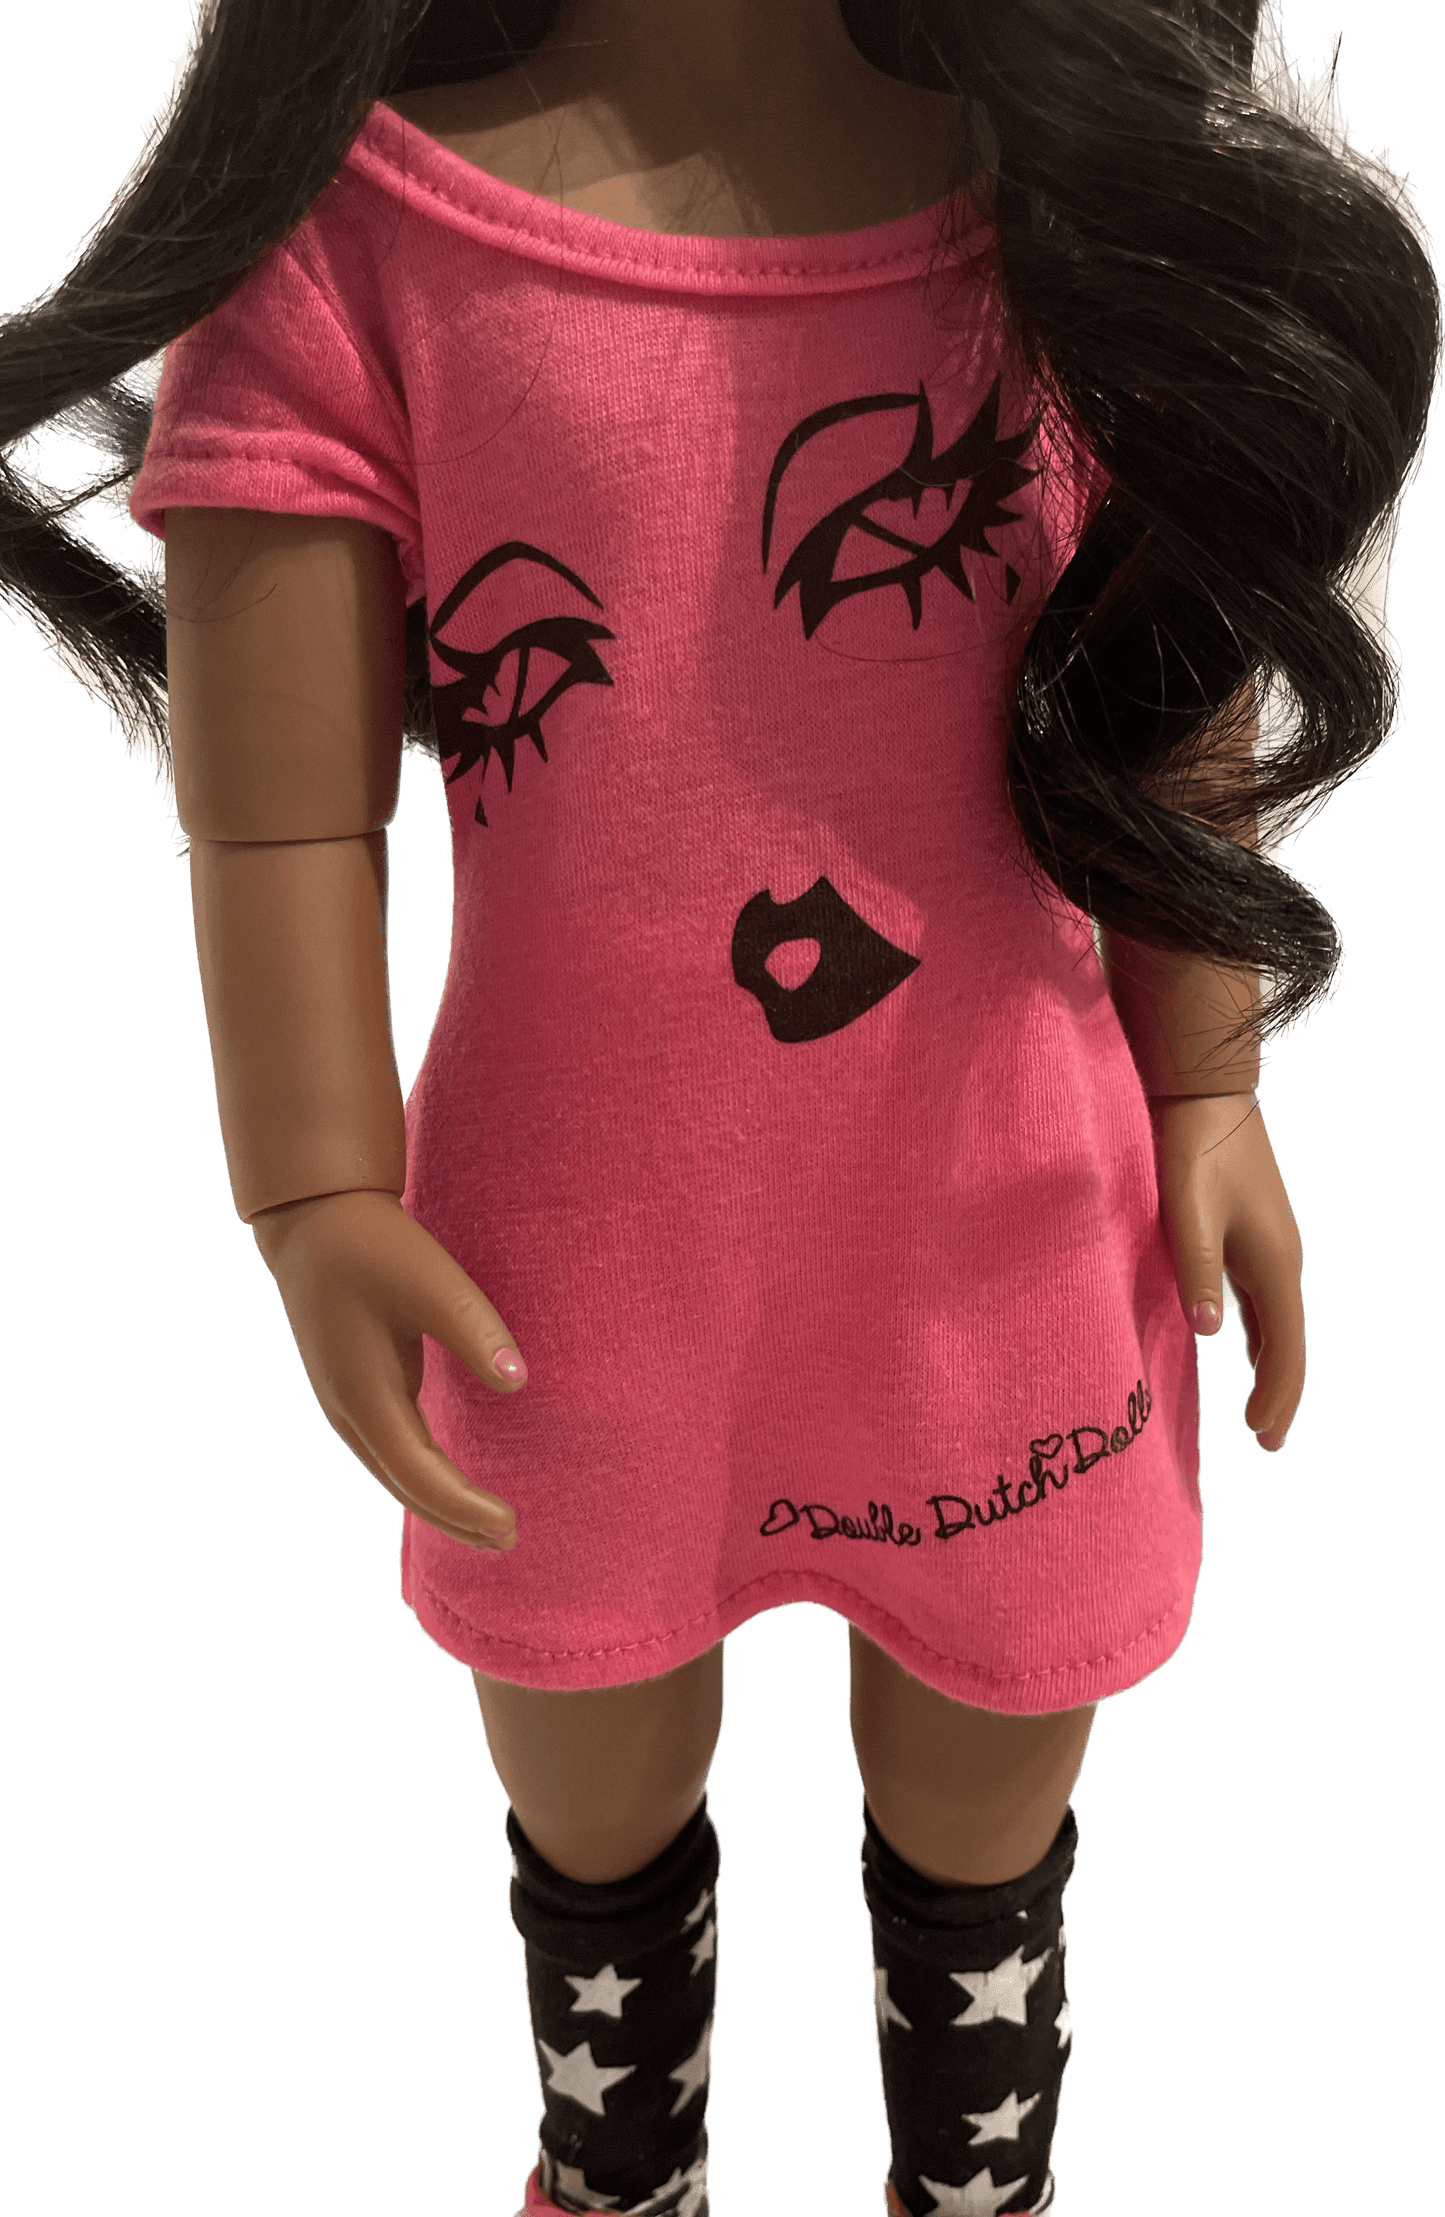 18” African American Fashion Doll- Kaila